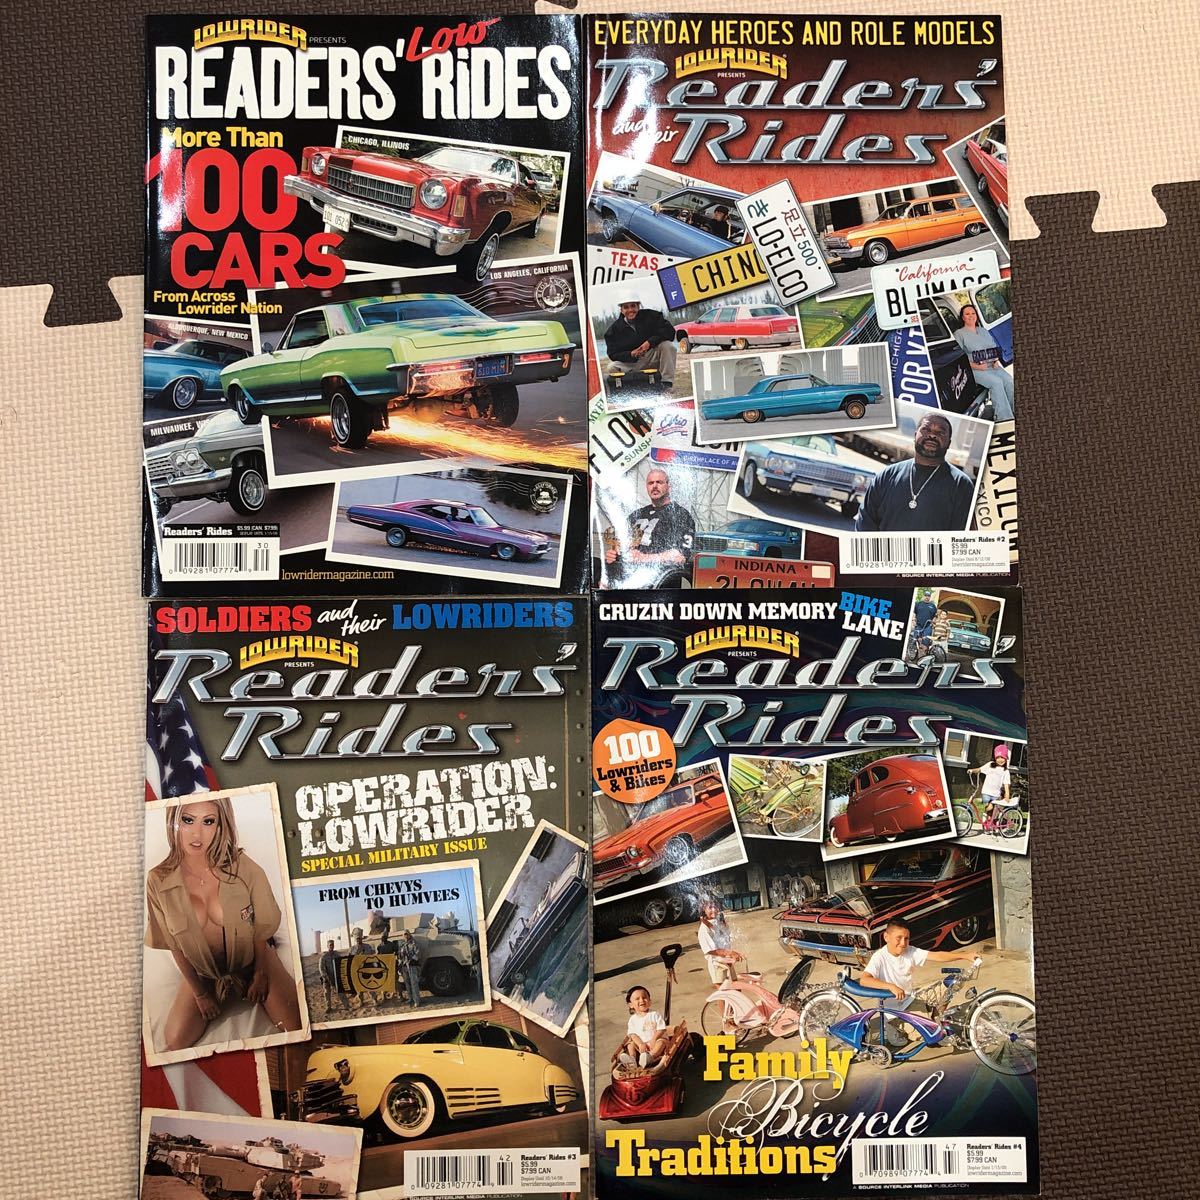 US lowrider magazine 別冊 Readers' Rides セット インパラ ボム リーガル カトラス モンテカルロ キャディラック ローチャリ ハイドロ